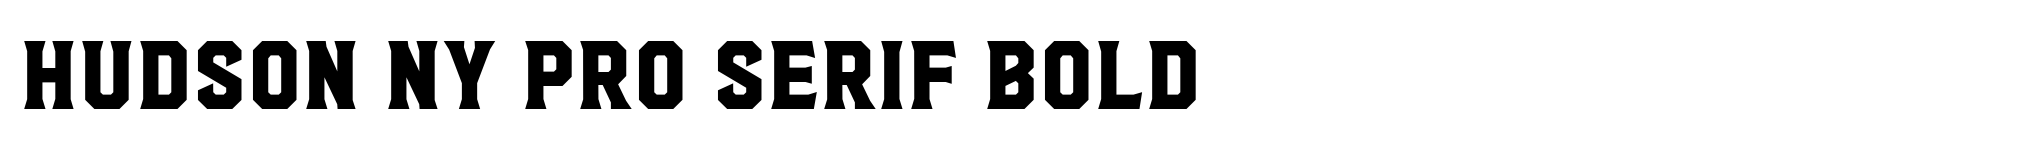 Hudson NY Pro Serif Bold image